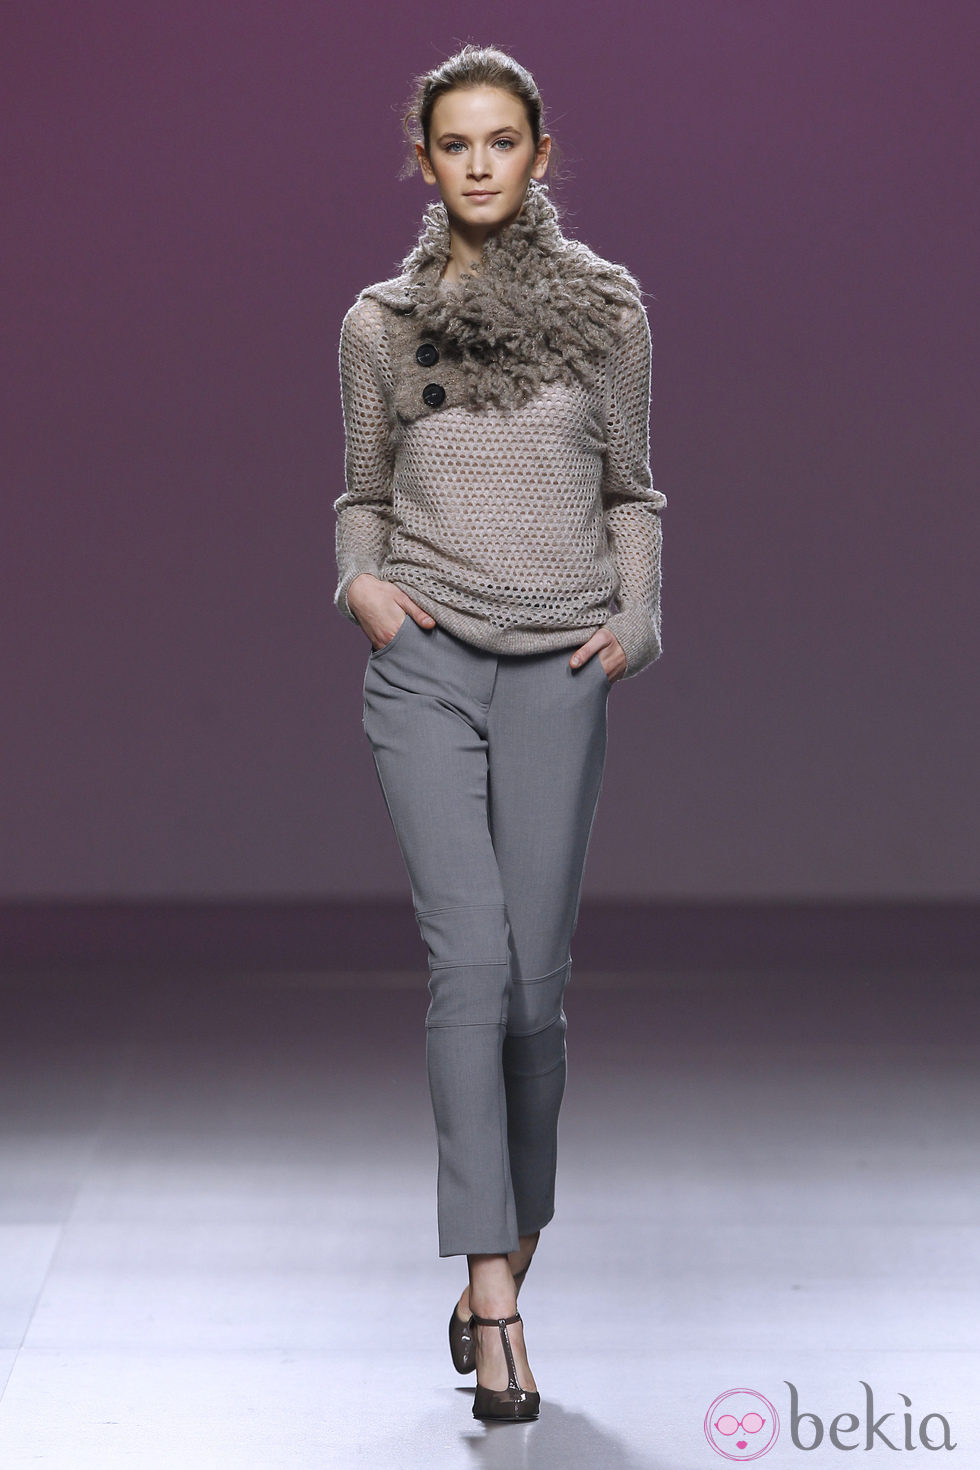 Pantalón de traje gris perla y jersey de punto de Sita Murt en la Fashion Week Madrid